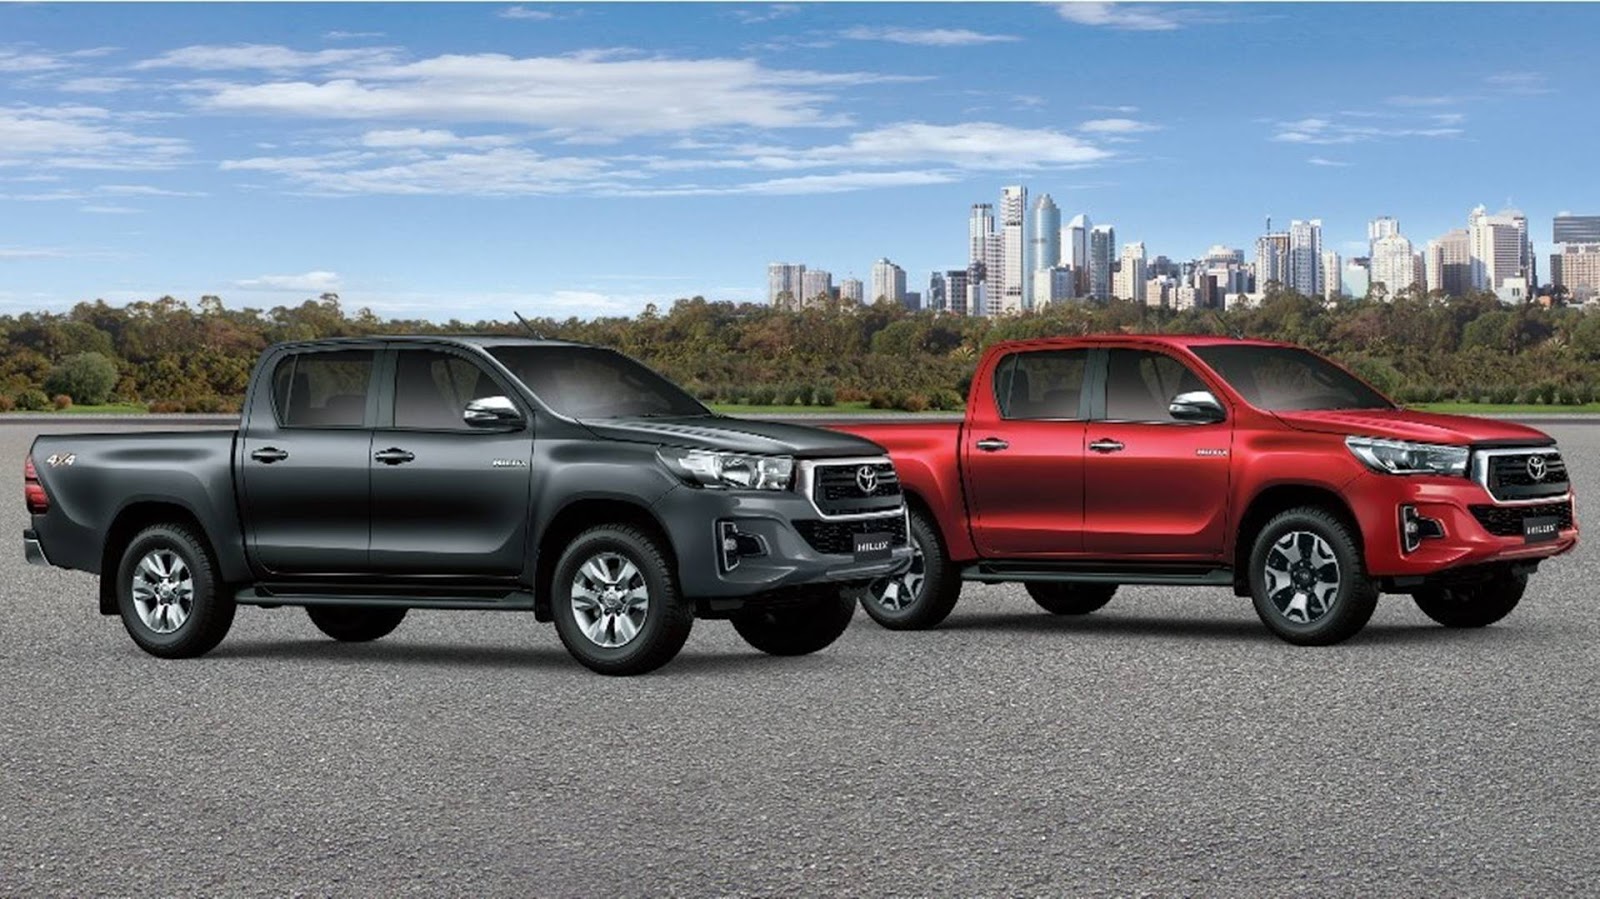 Nova Toyota Hilux 2019: fotos, preços e especificações